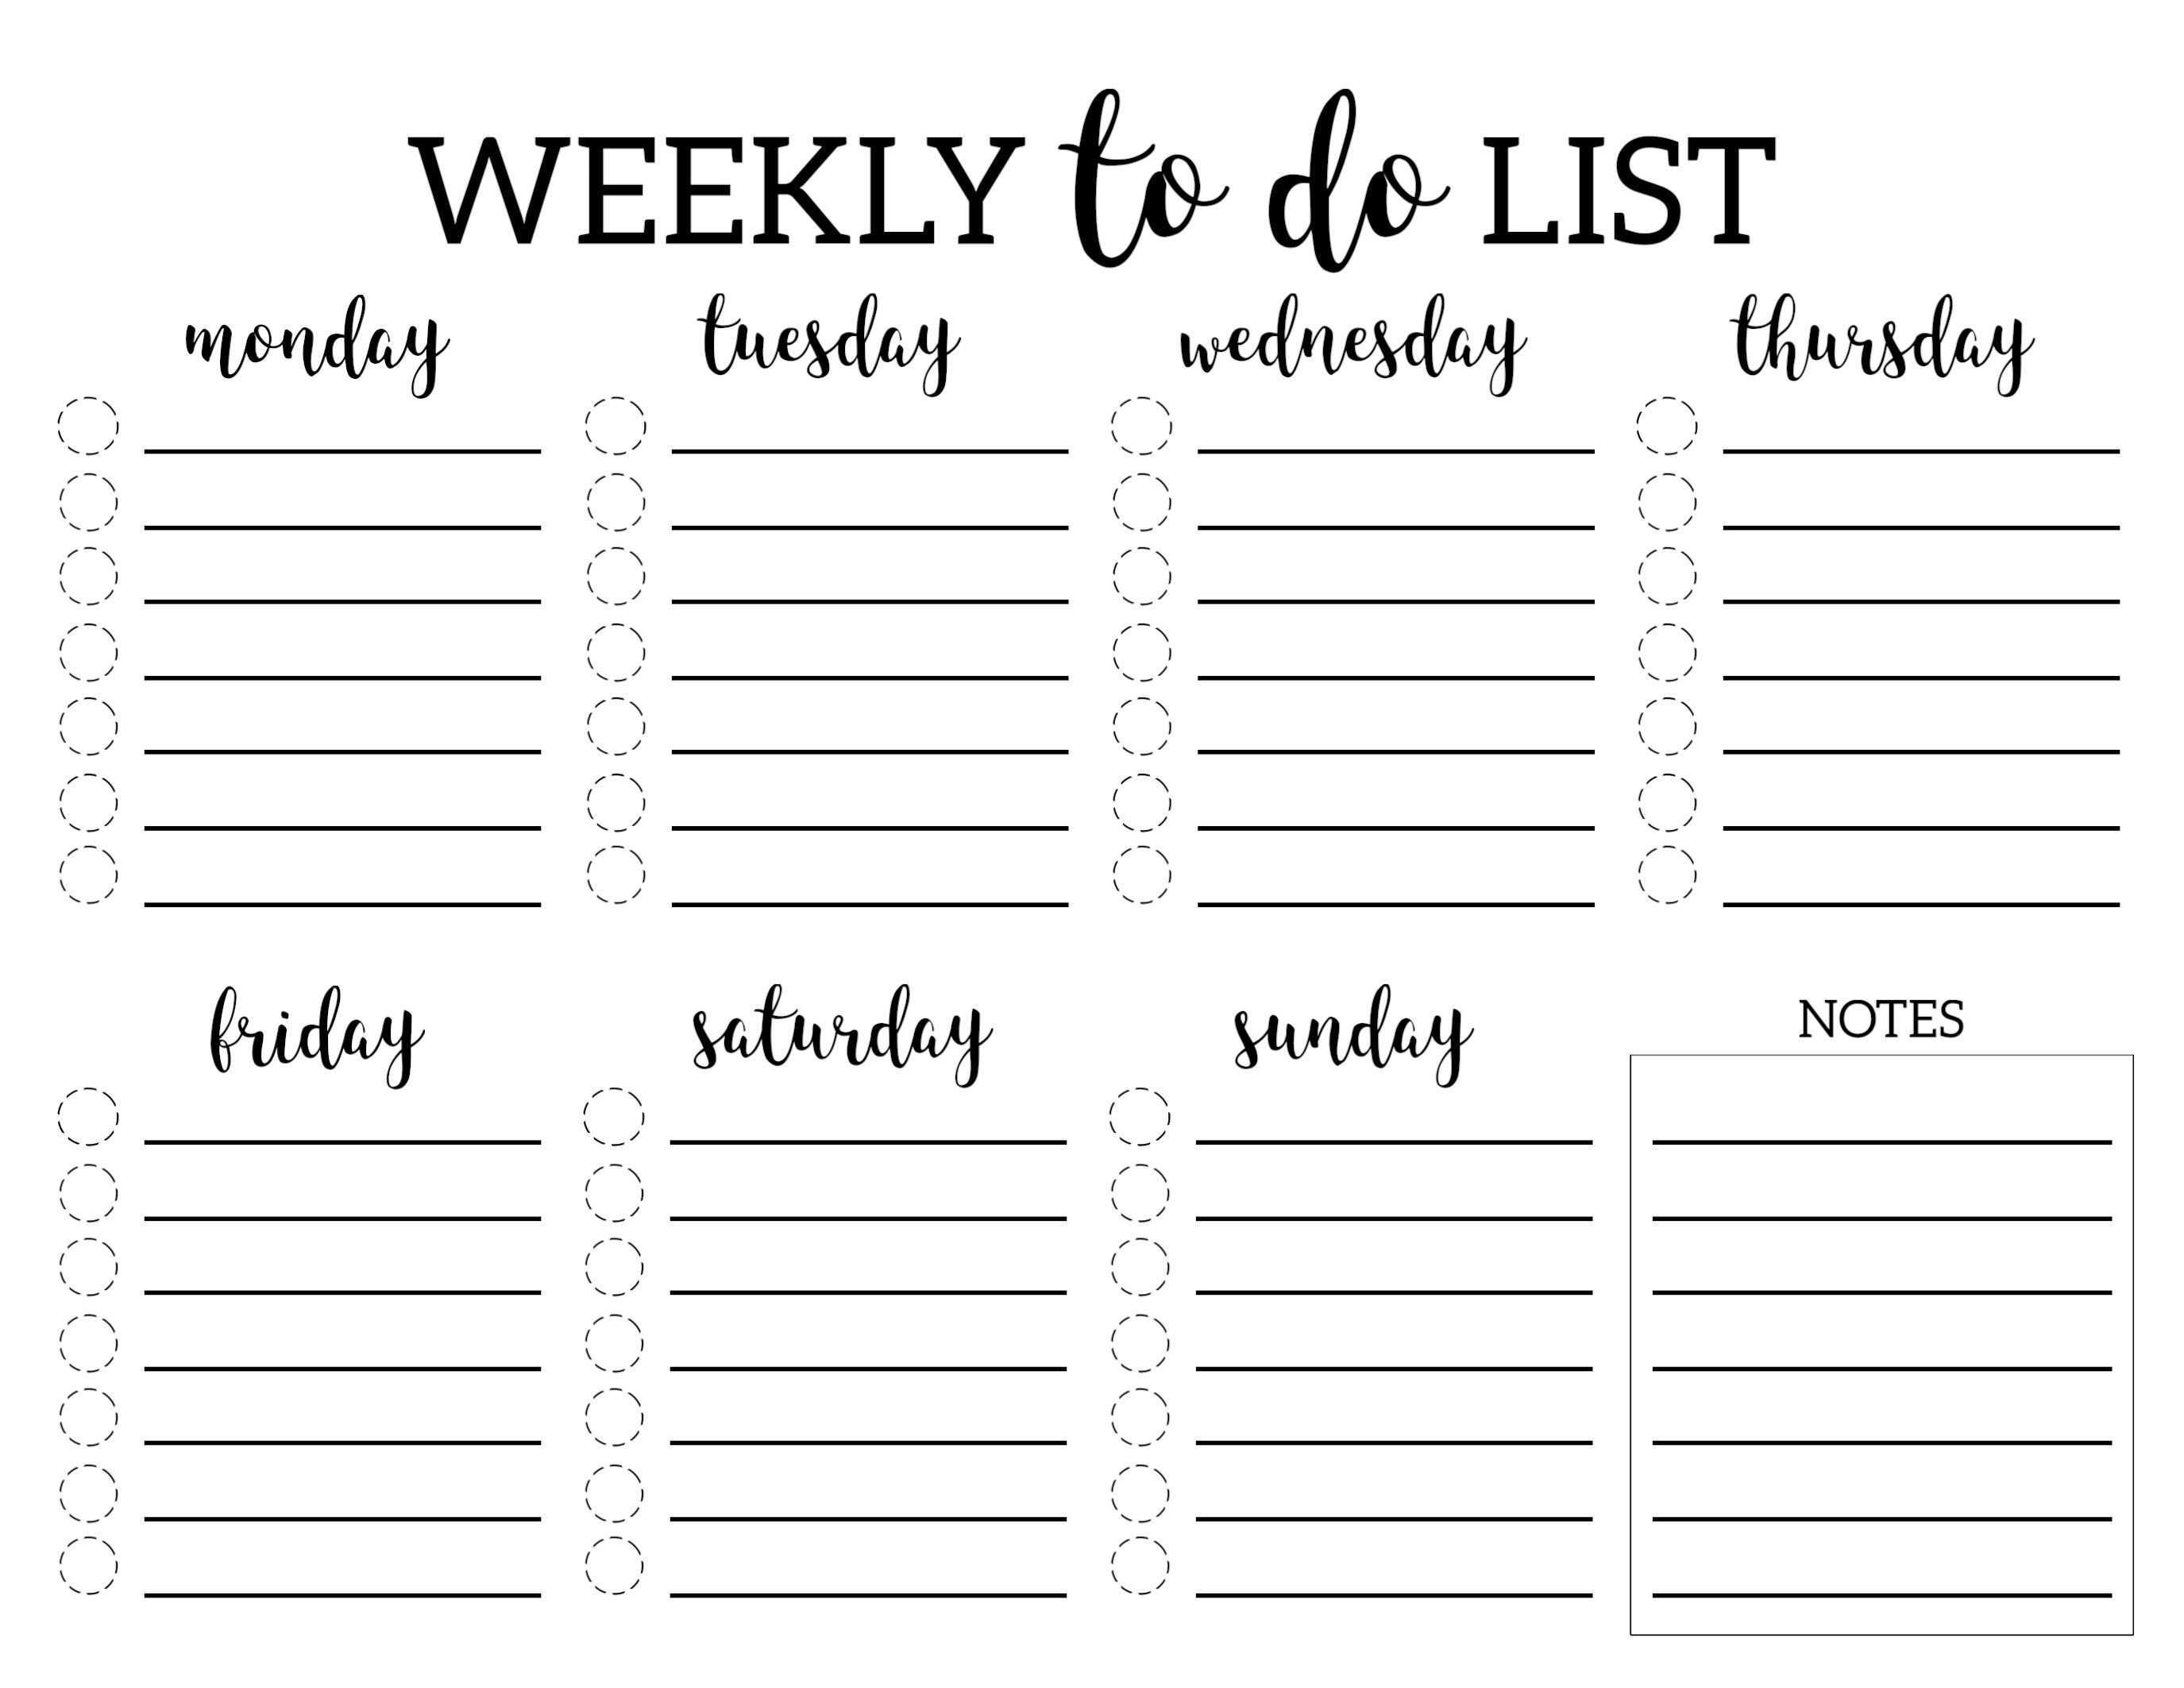 Weekly To Do List 2 Jpg 2750 2125 To Do Liste Vorlage Checklisten Vorlage Wochenplan Zum Ausdrucken